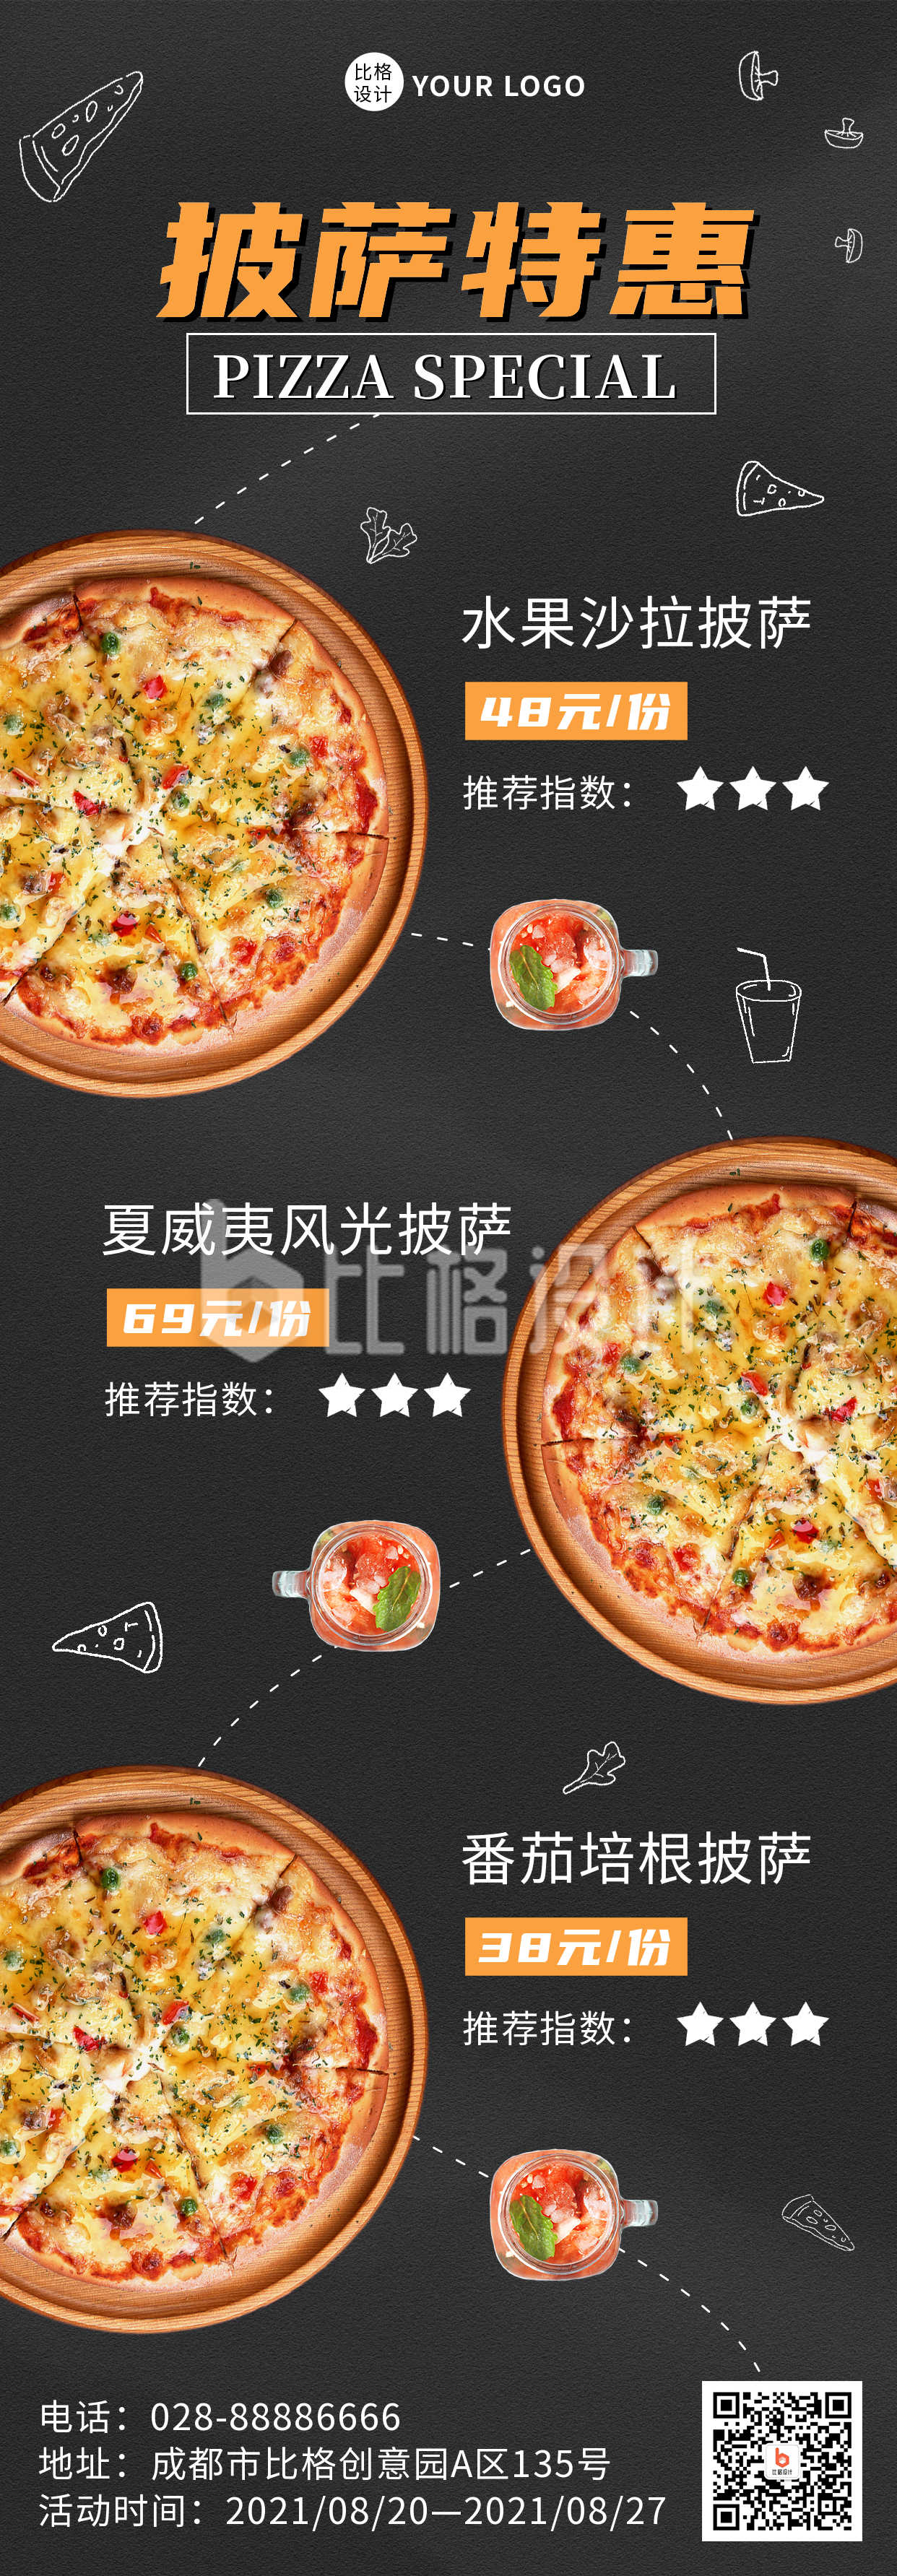 元素披萨特惠菜品展示长图海报